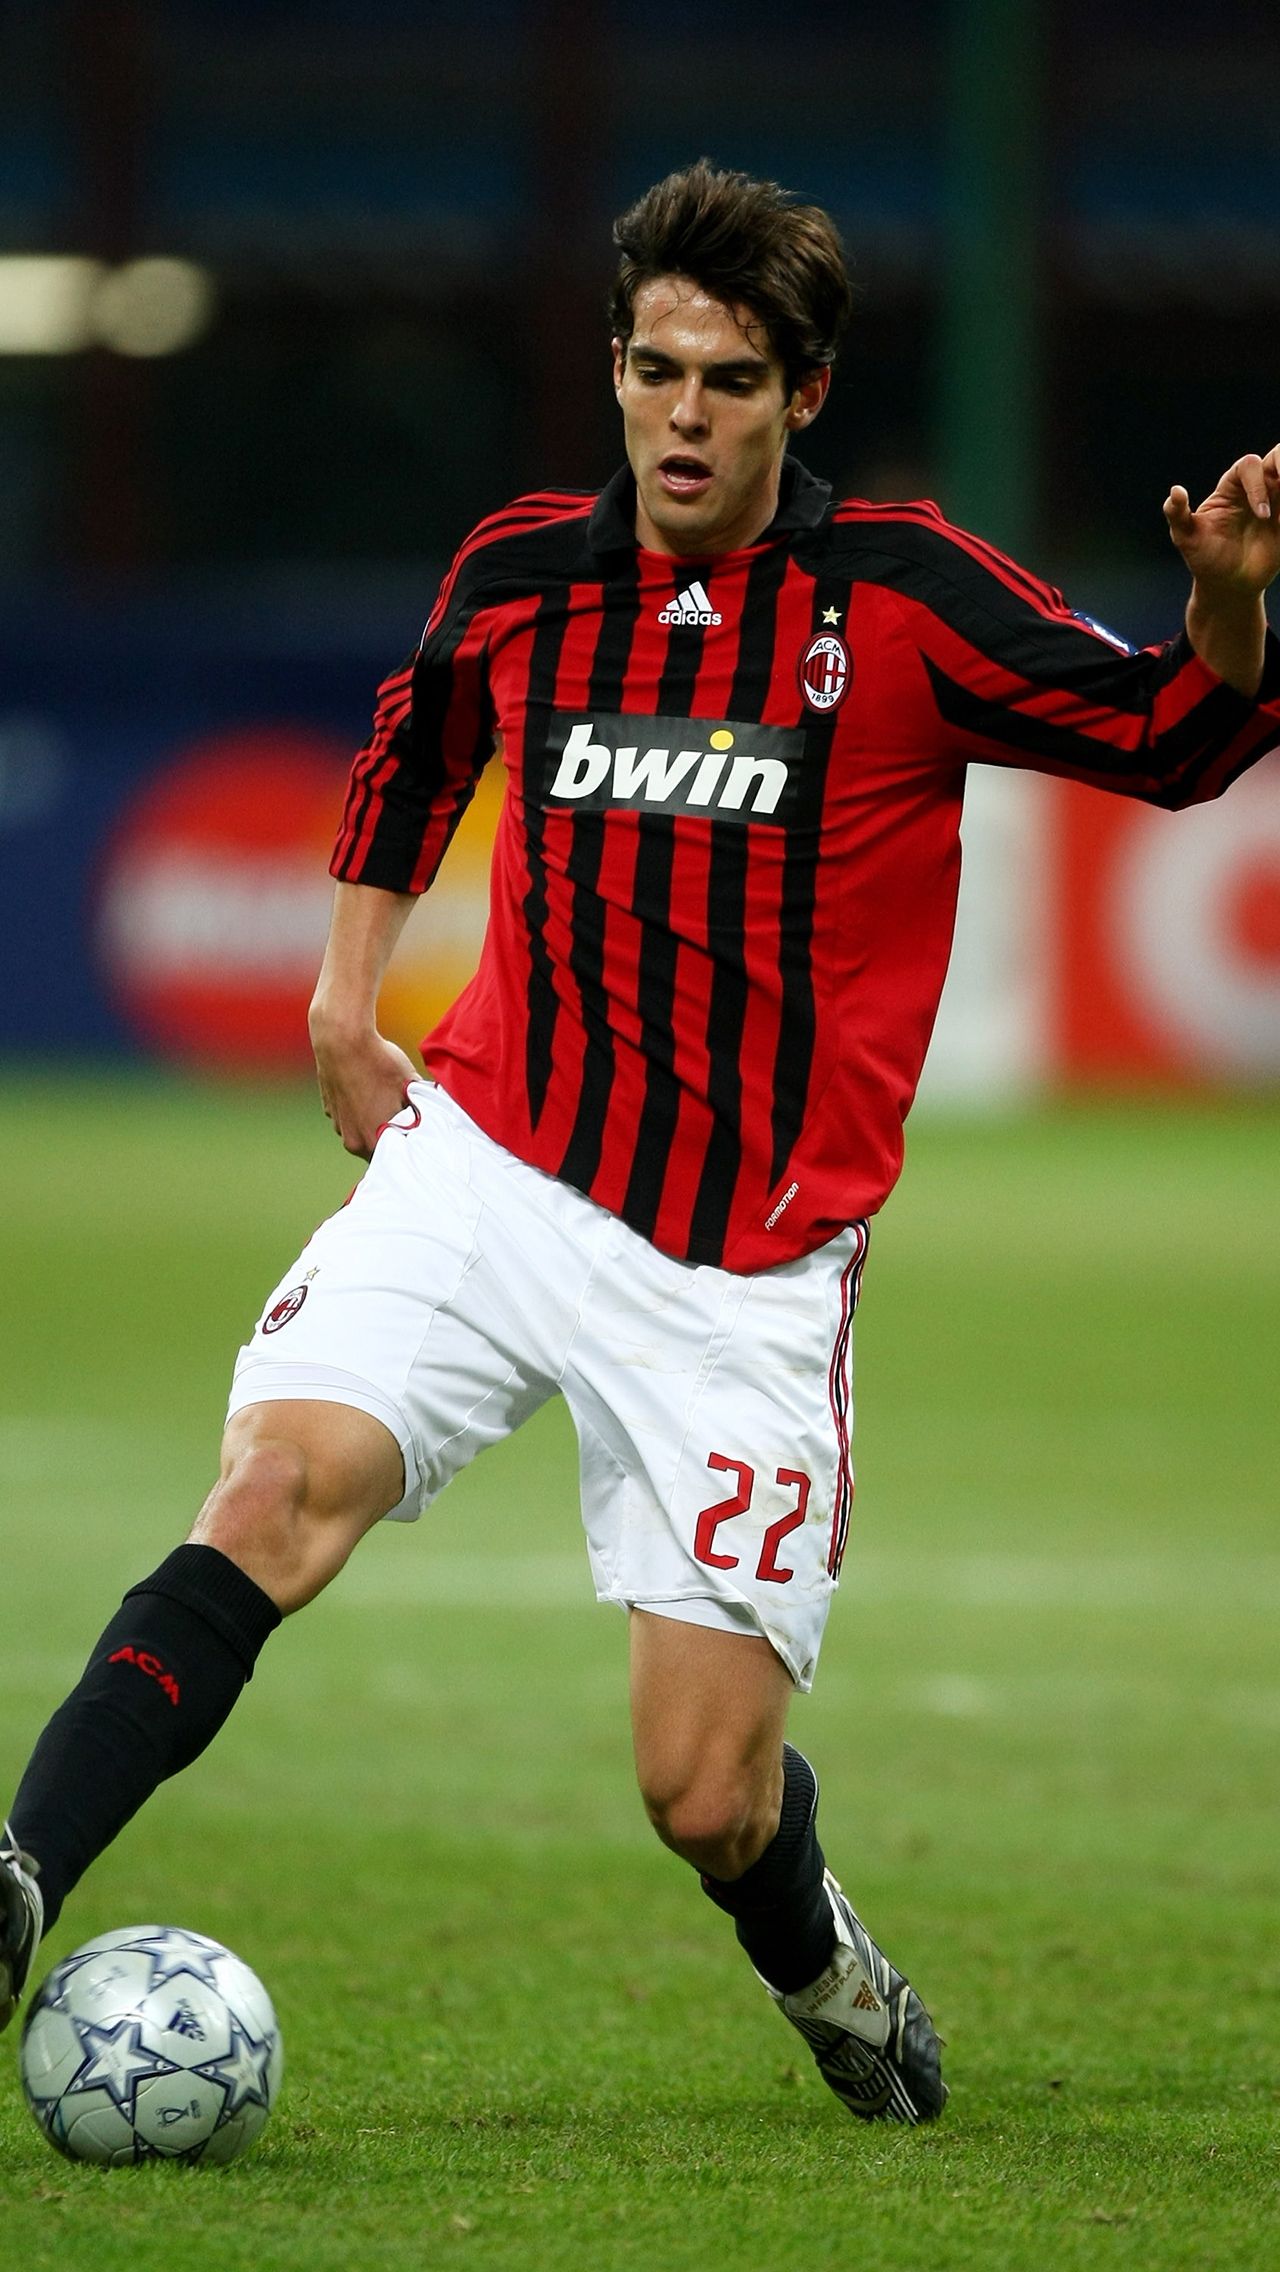 2007 год — Кака («Милан»/Бразилия)